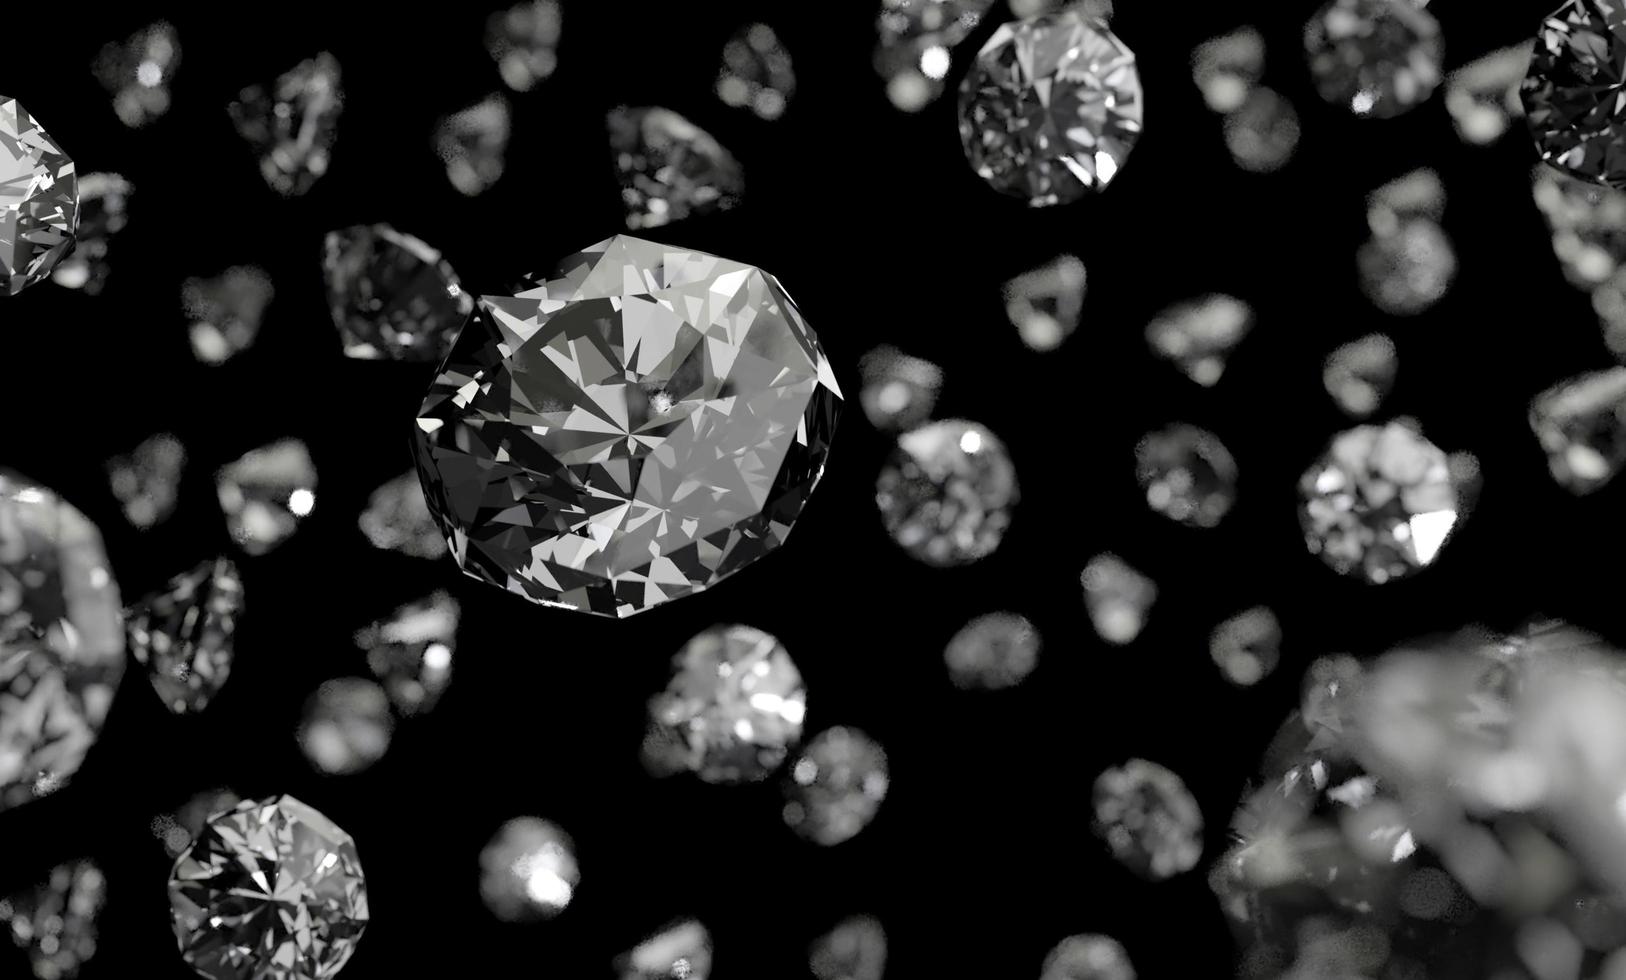 Diamanten auf schwarzem Hintergrund mit reflektierender Oberfläche. 3D-Rendering. foto